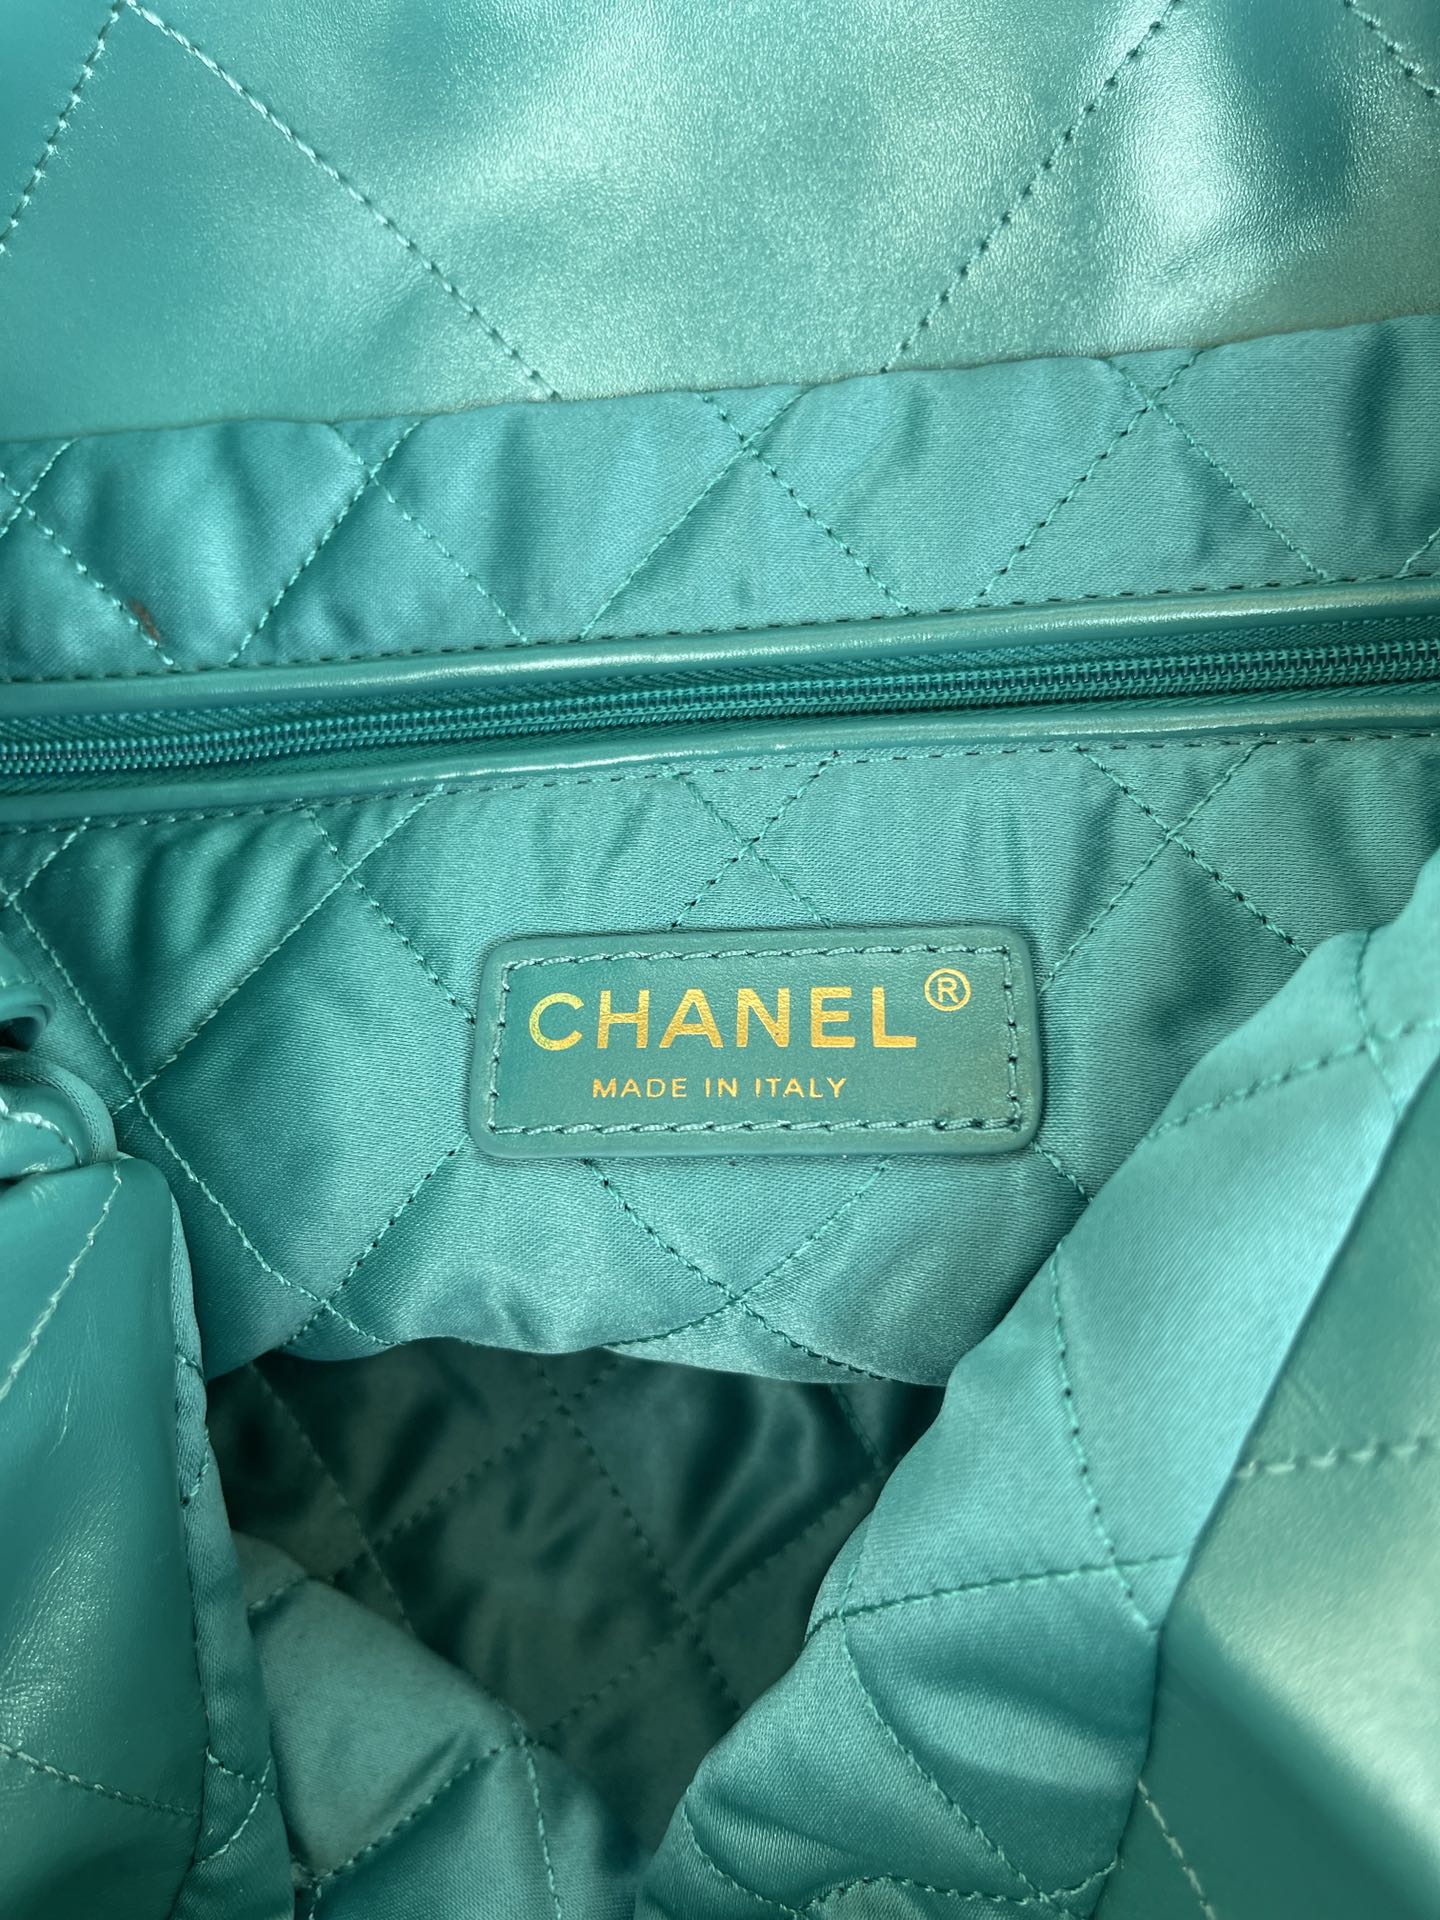 品牌:Chanel型号:AS3260